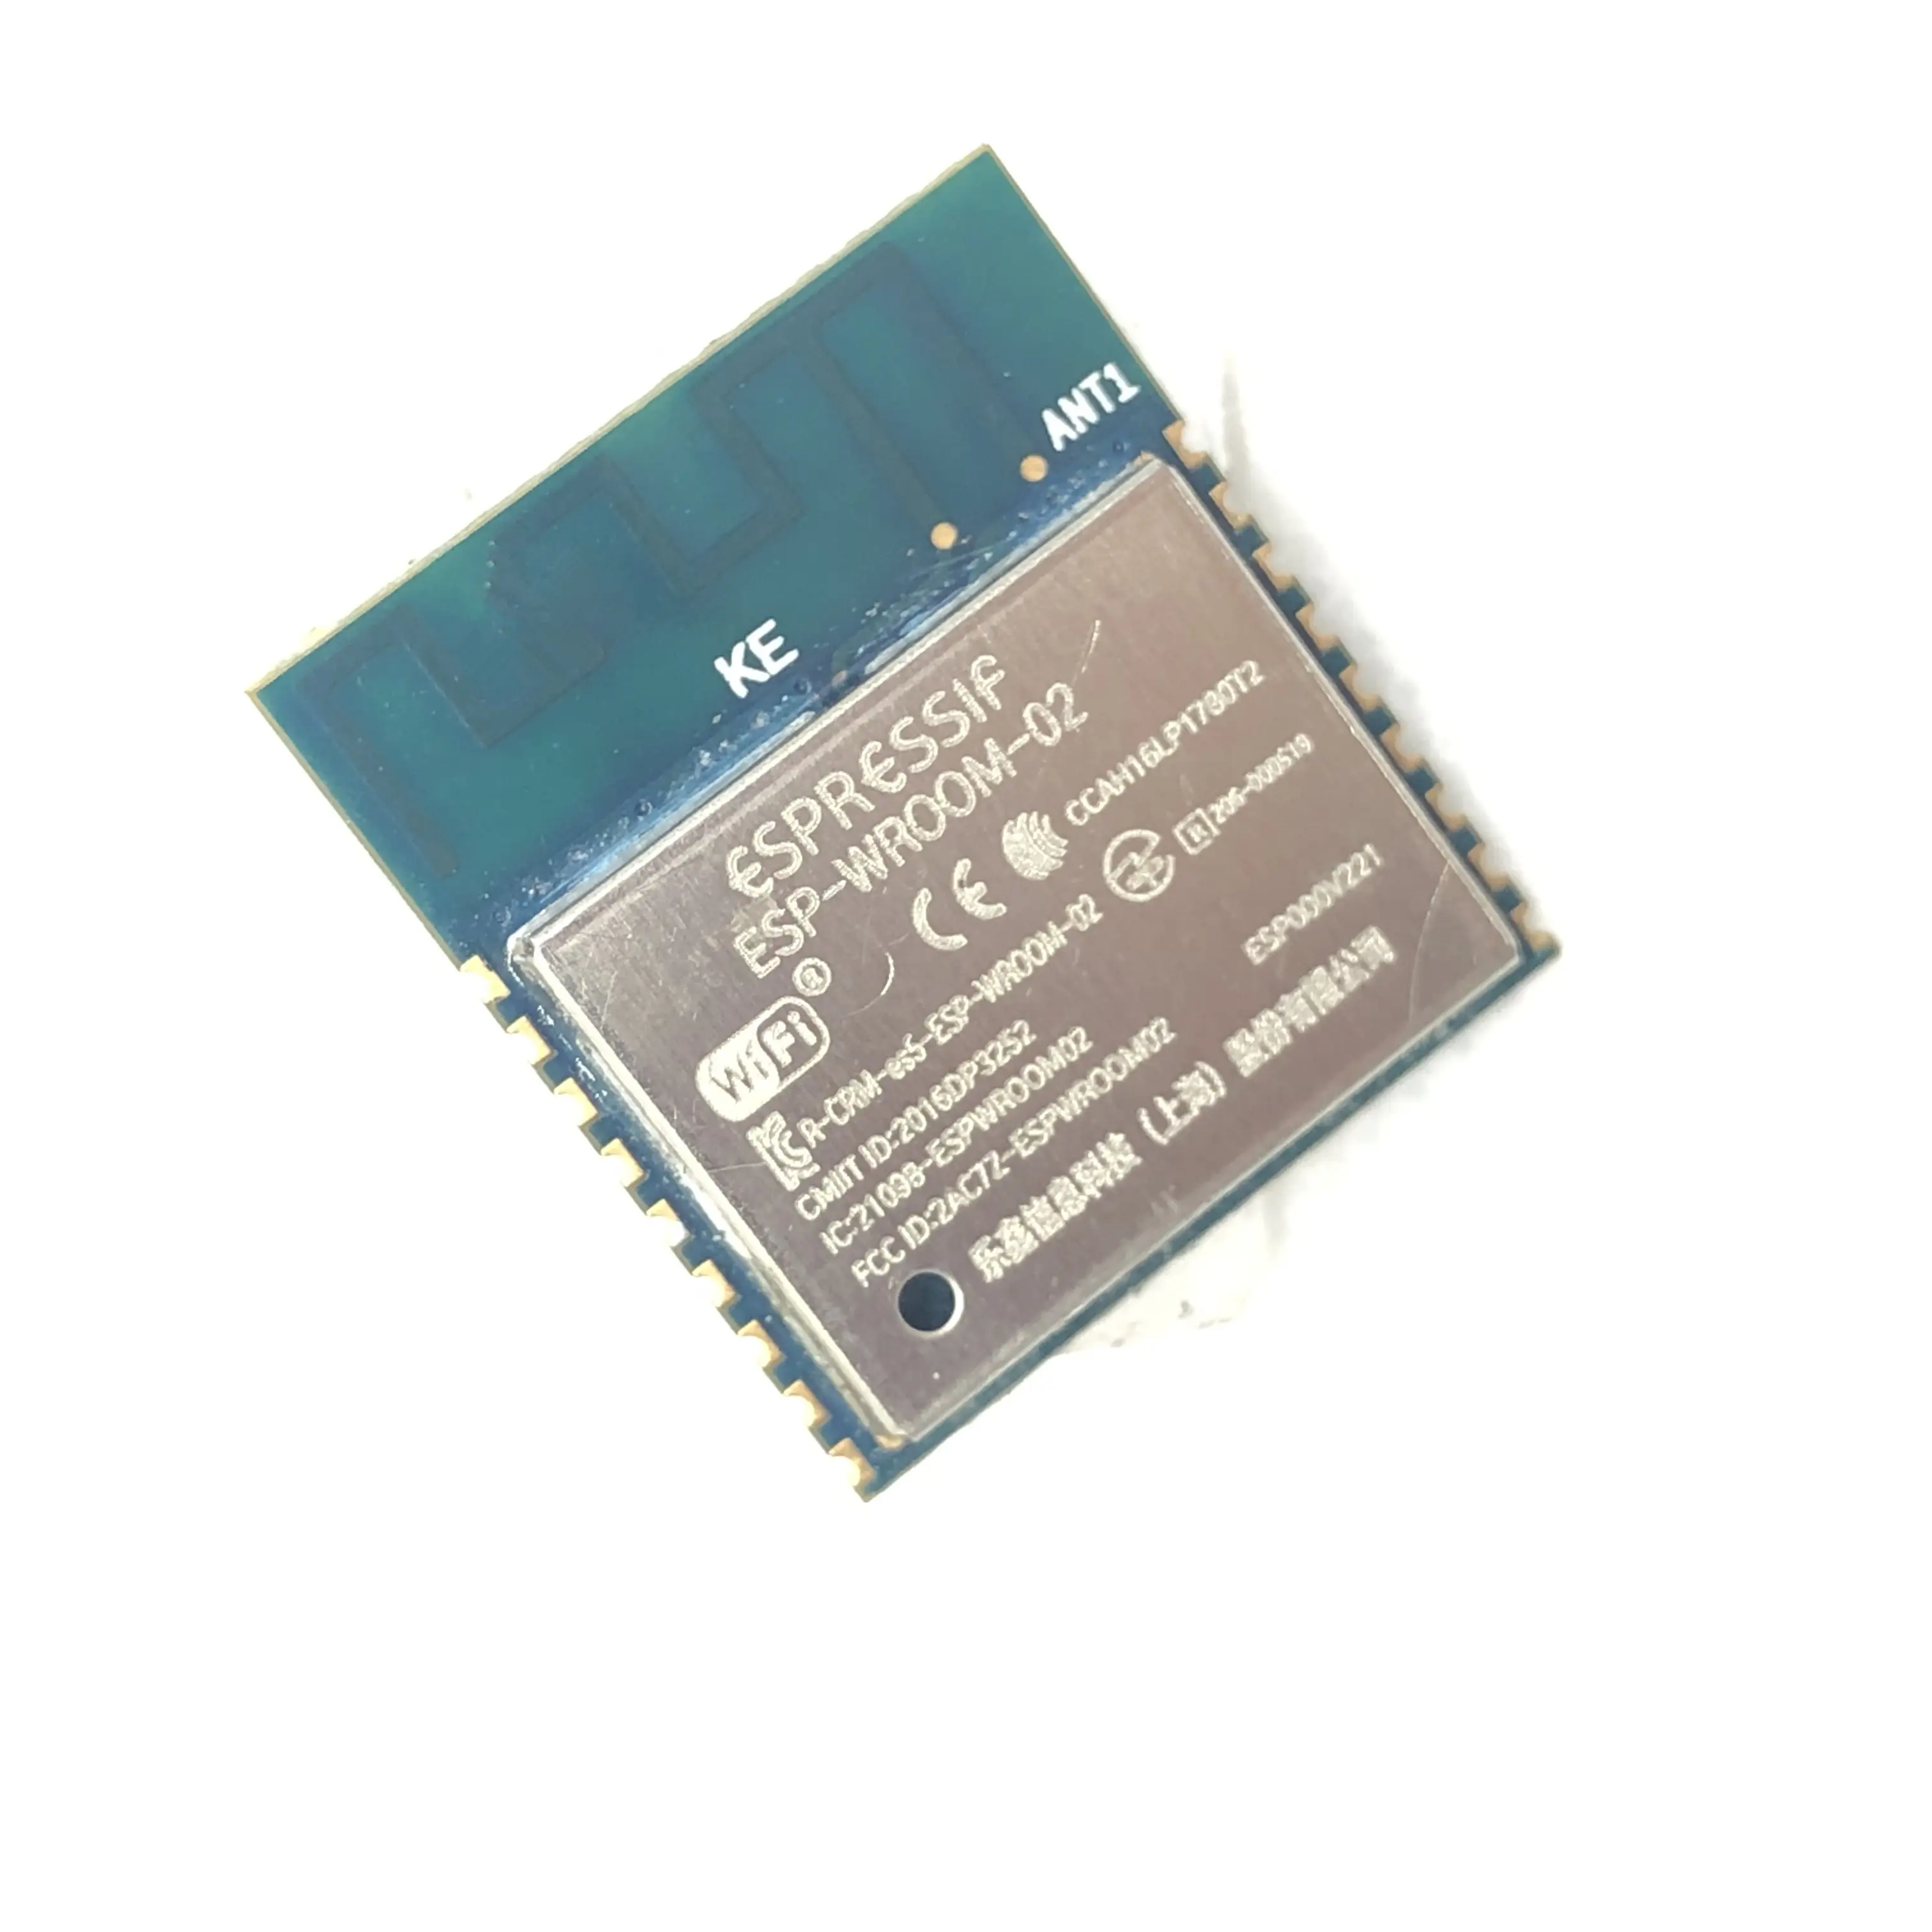 Espressif-Módulo WiFi de 4MB, dispositivo ESP8266 serial con FCC CE RoHS para placa inteligente